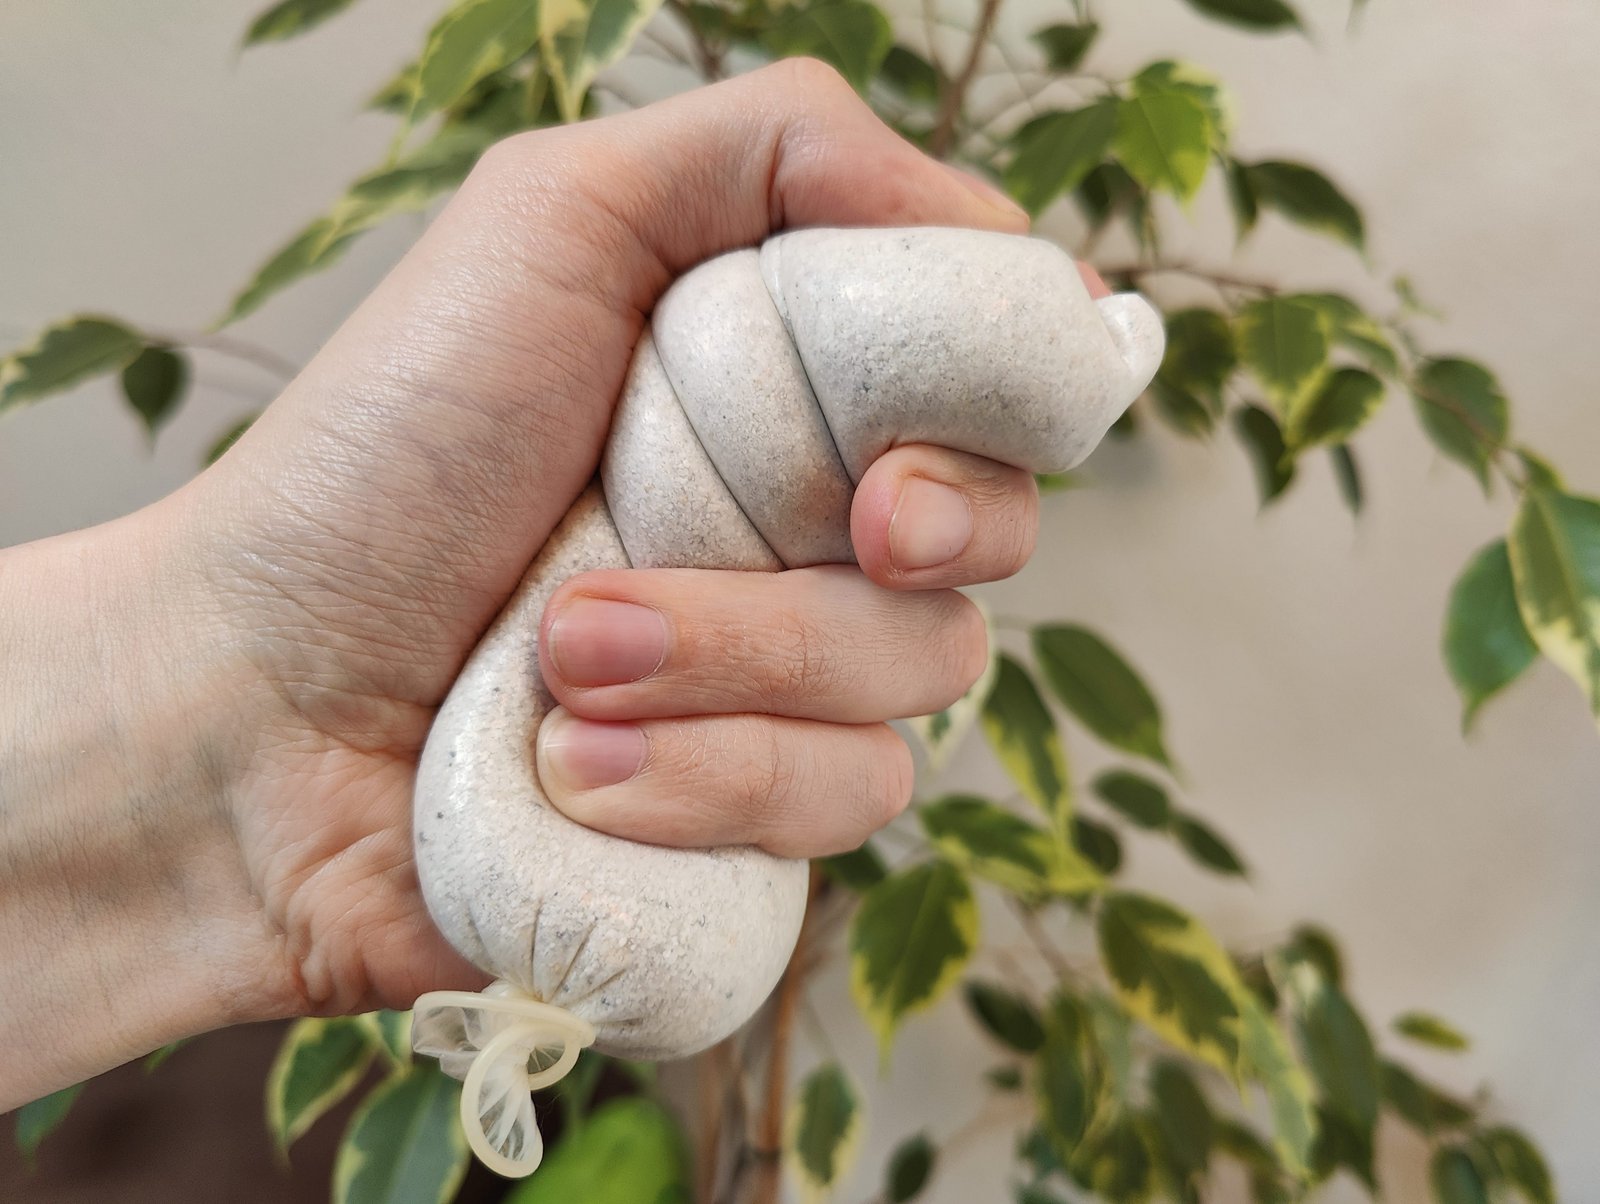 Przeterminowana prezerwatywa wypełniona piaskiem w dłoni osoby używającej jej jako piłki antystresowej.